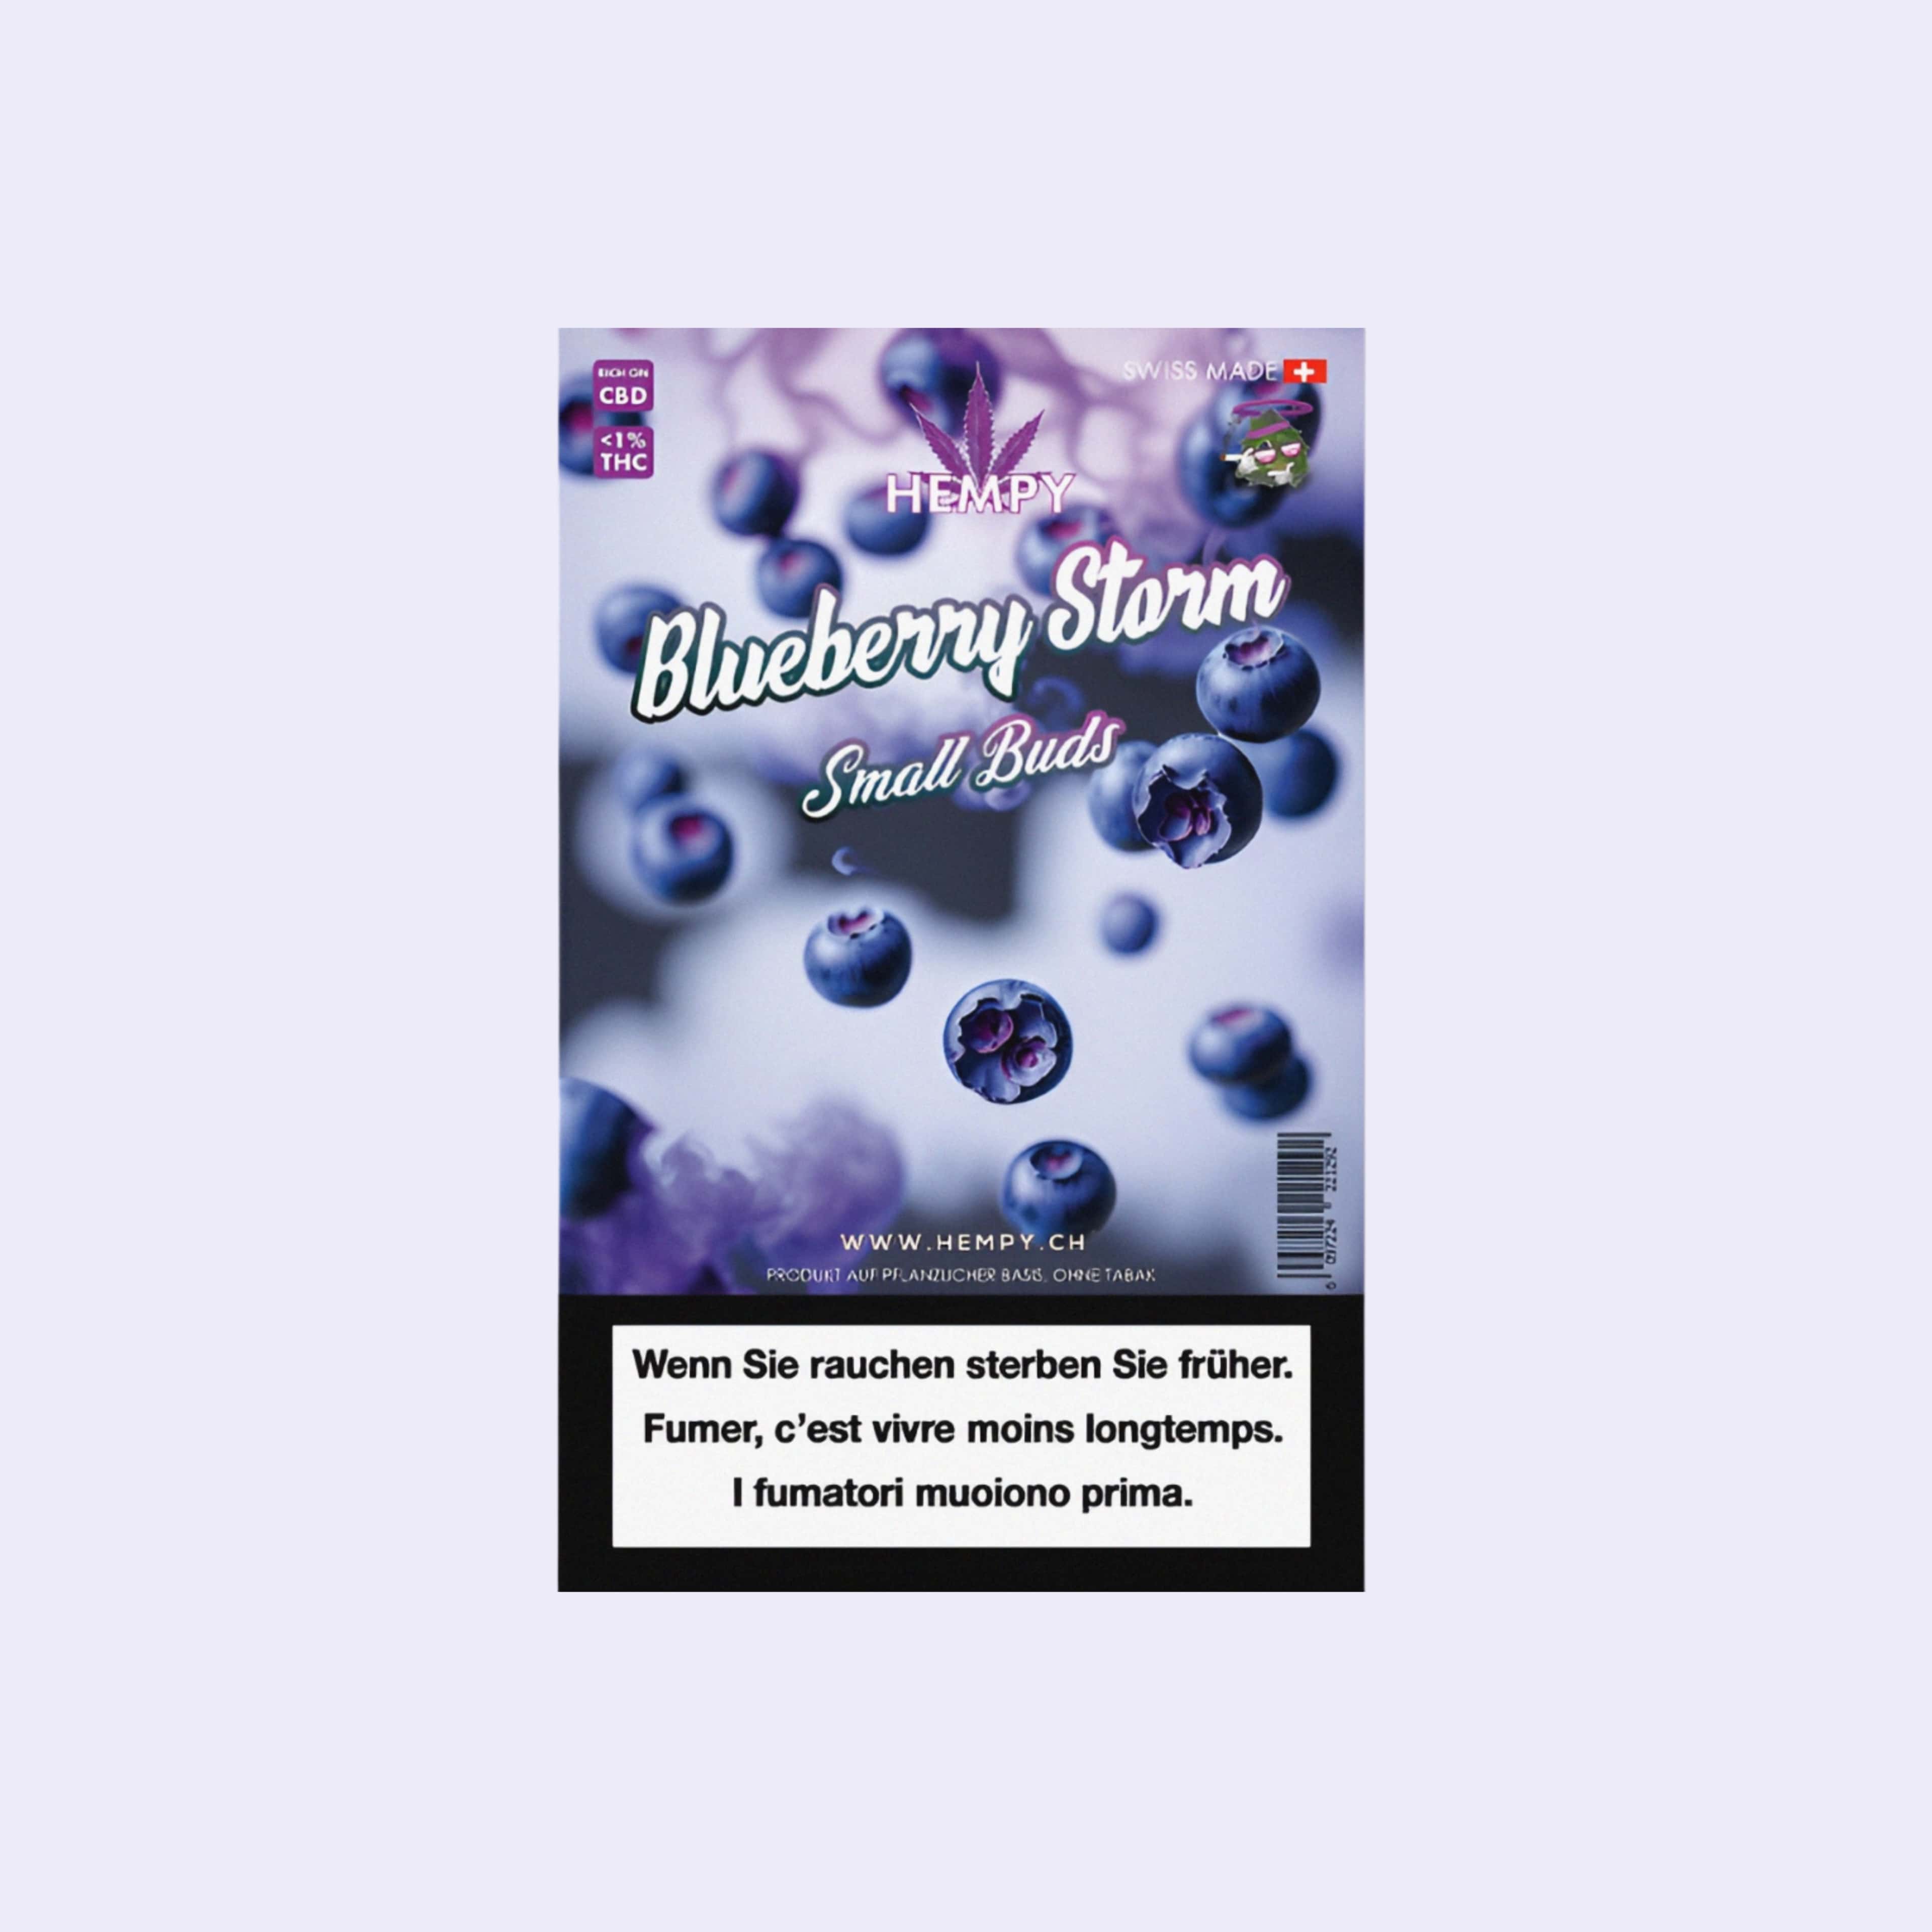 Dieses Bild zeigt die Indoor CBD Blüten Blueberry Storm von der Firma Hempy